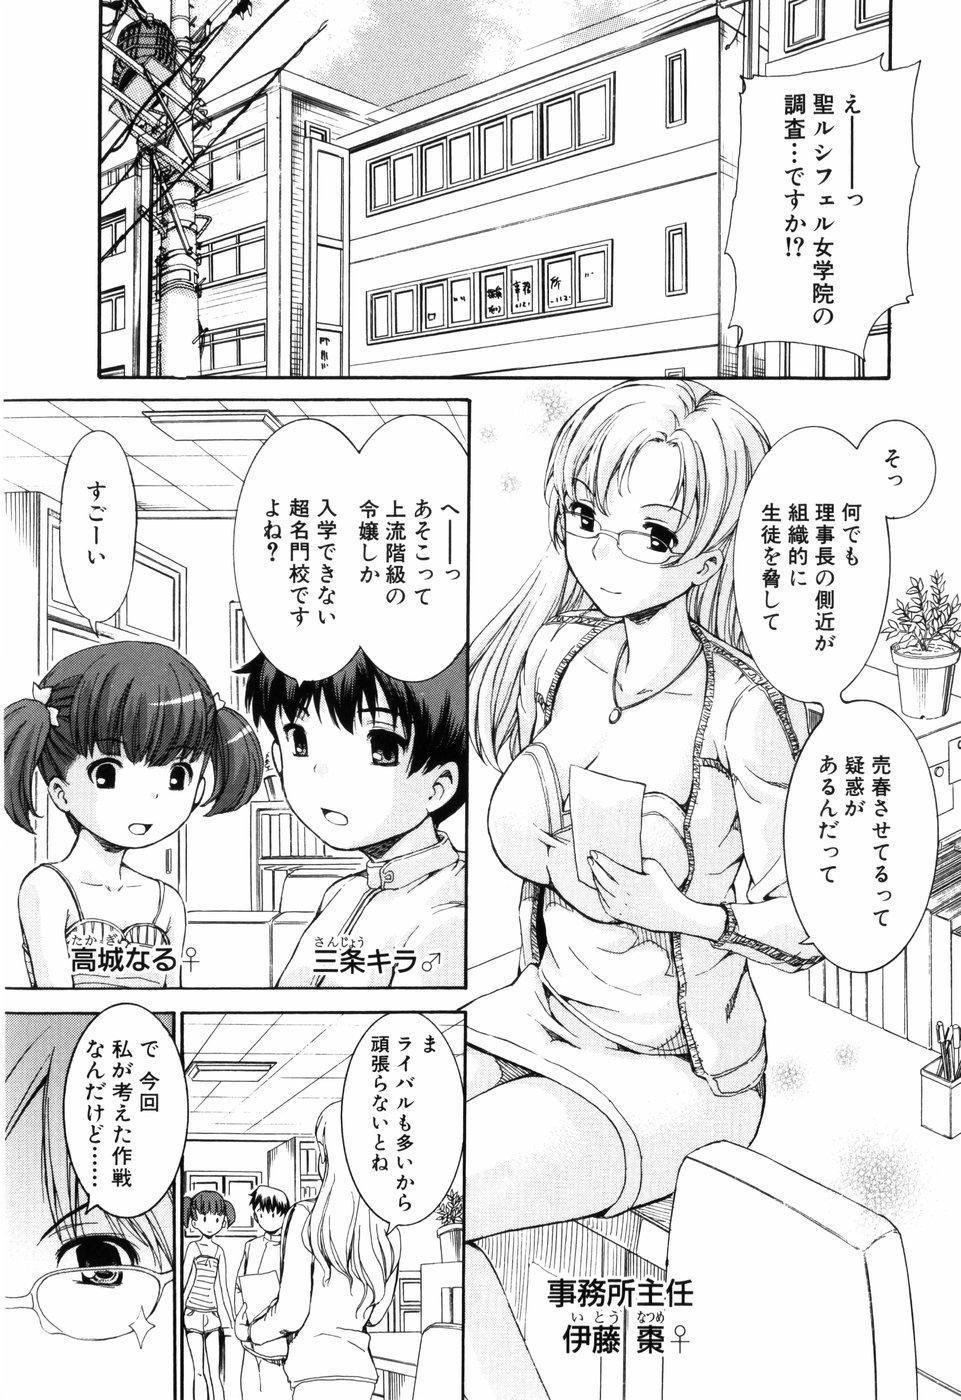 Bitch [Shinshoku Gankou] Otome no Hanazono Sennyuu Daisakusen - Otome's Flower Garden -Sneaking Strategy- Van - Page 6